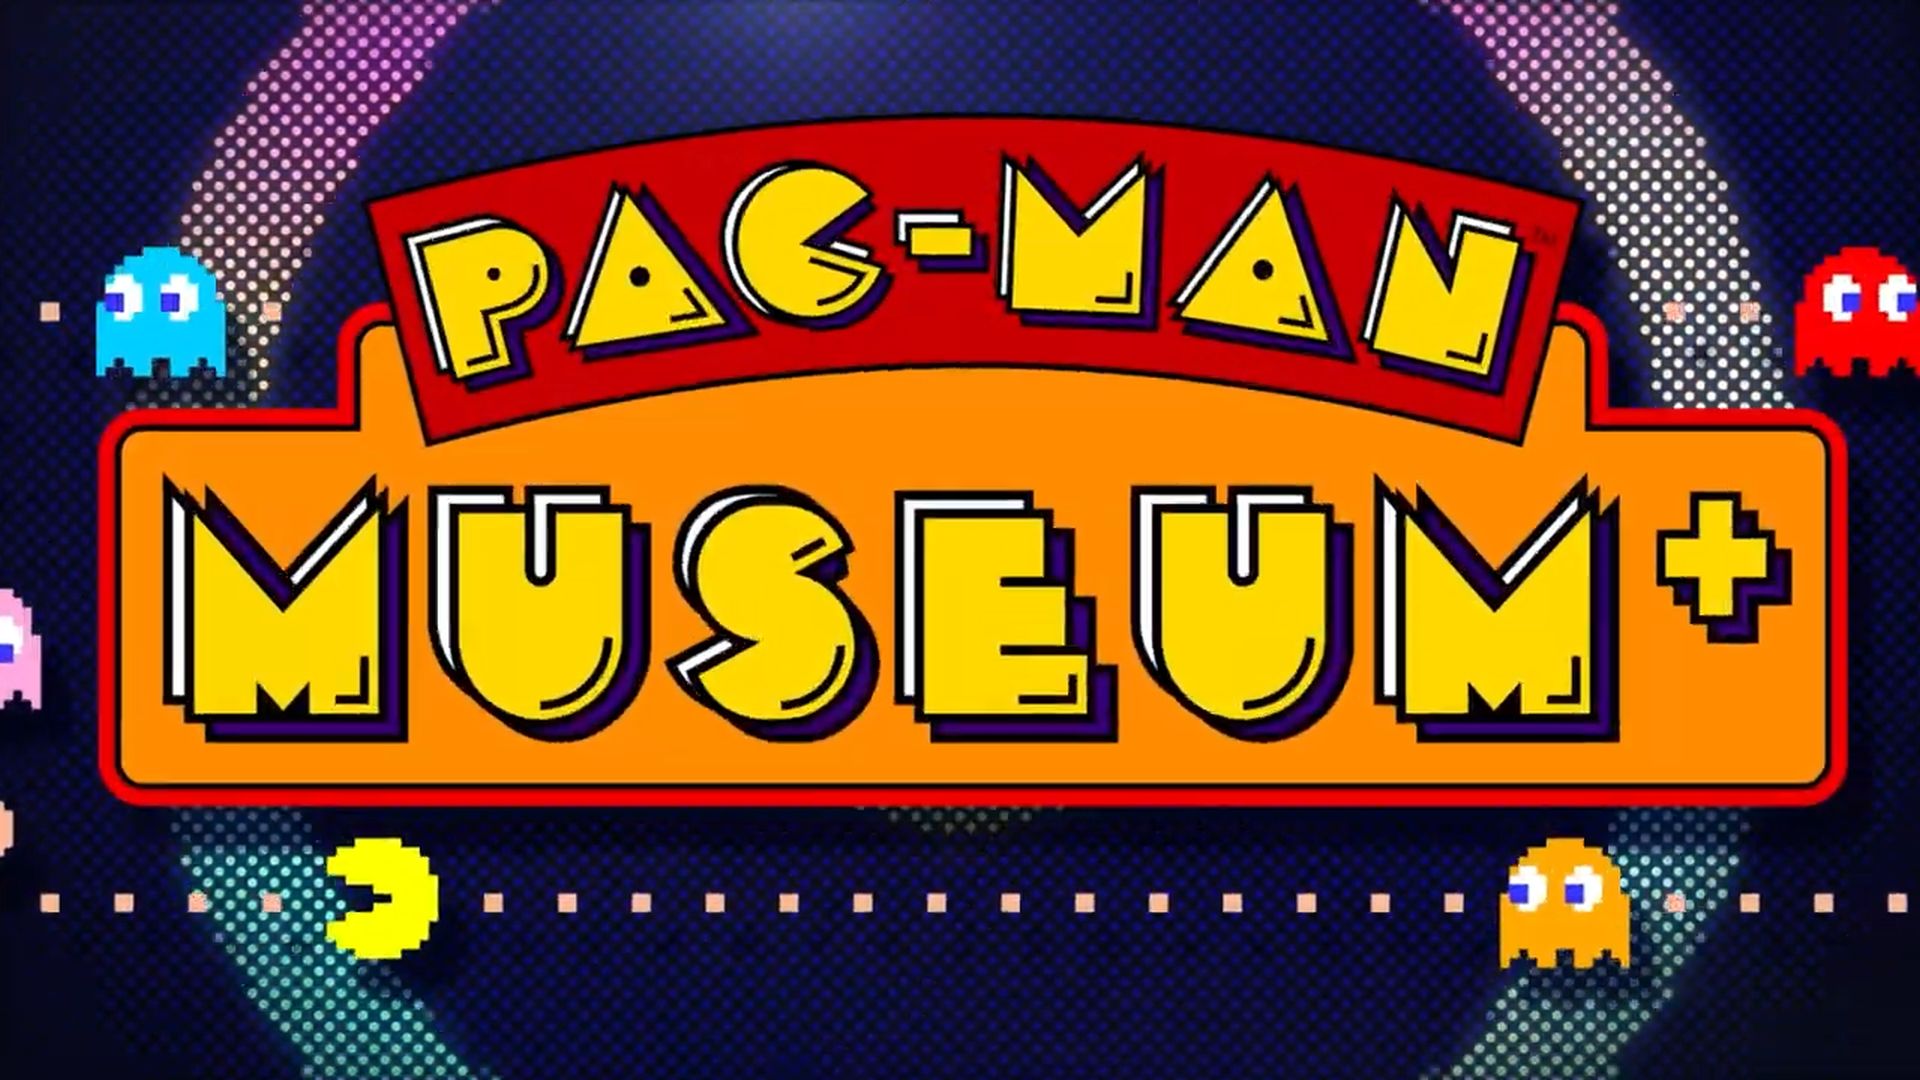 คอลเลคชั่นรวมเกมคลาสสิค Pac-Man Museum+ วางจำหน่ายแล้ว